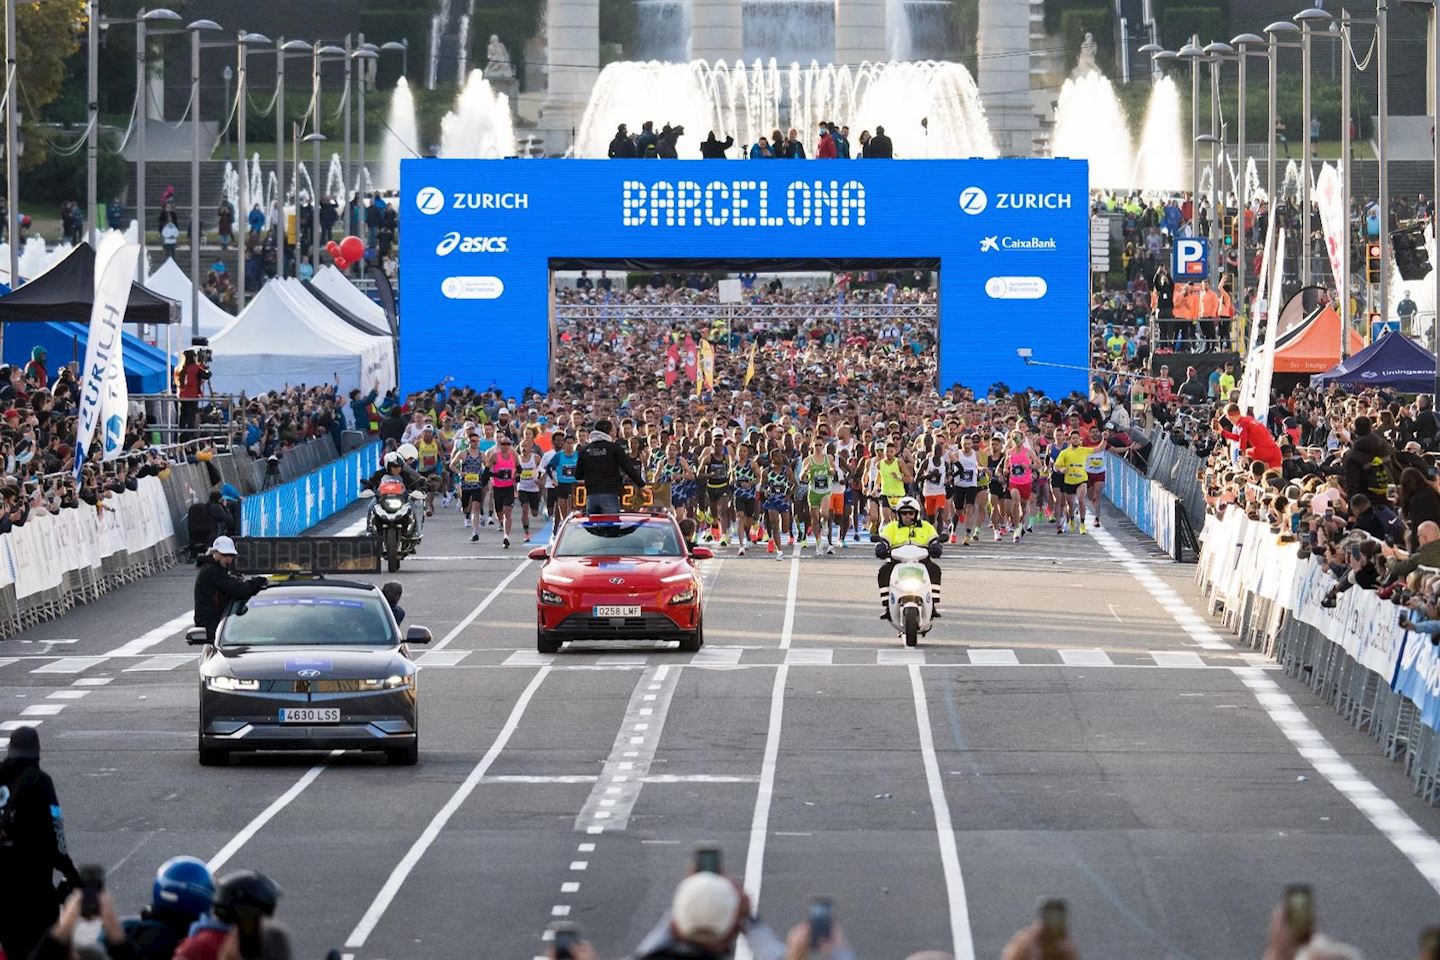 Zurich Barcelona Marathon, Nov 07 2021 World's Marathons